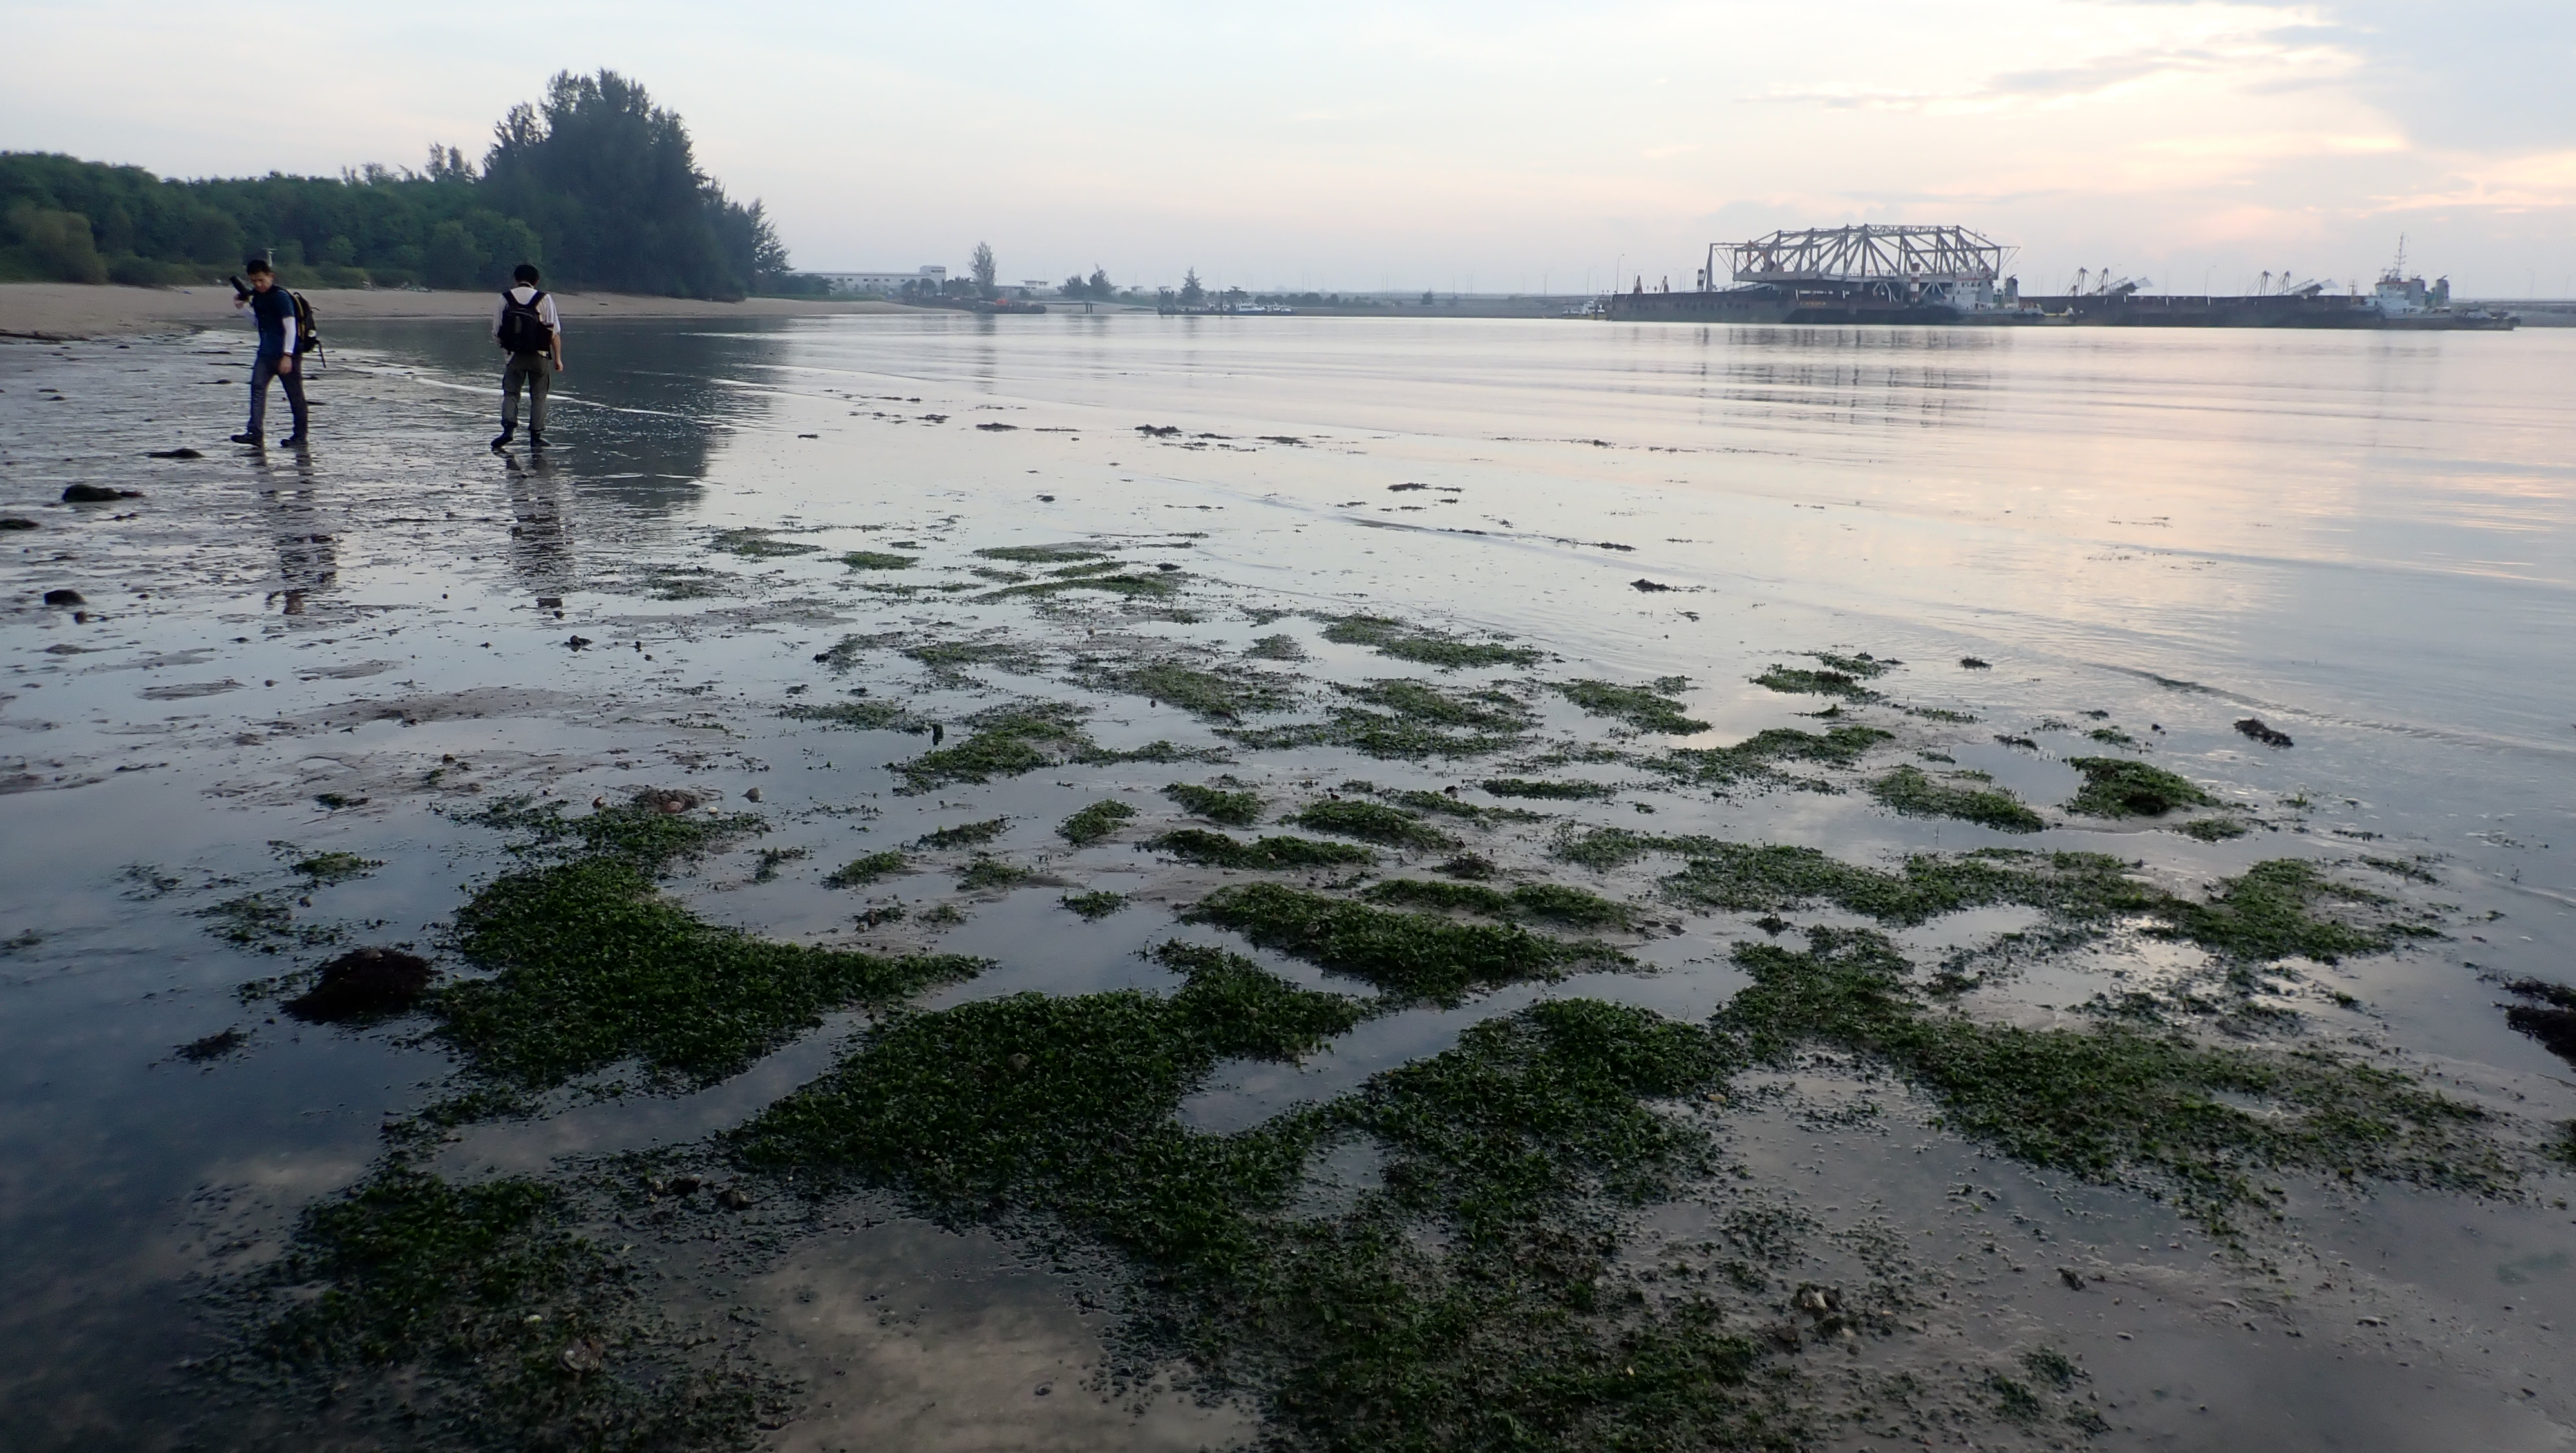 Changi Bay EIA dugong feeding trails, june 2022